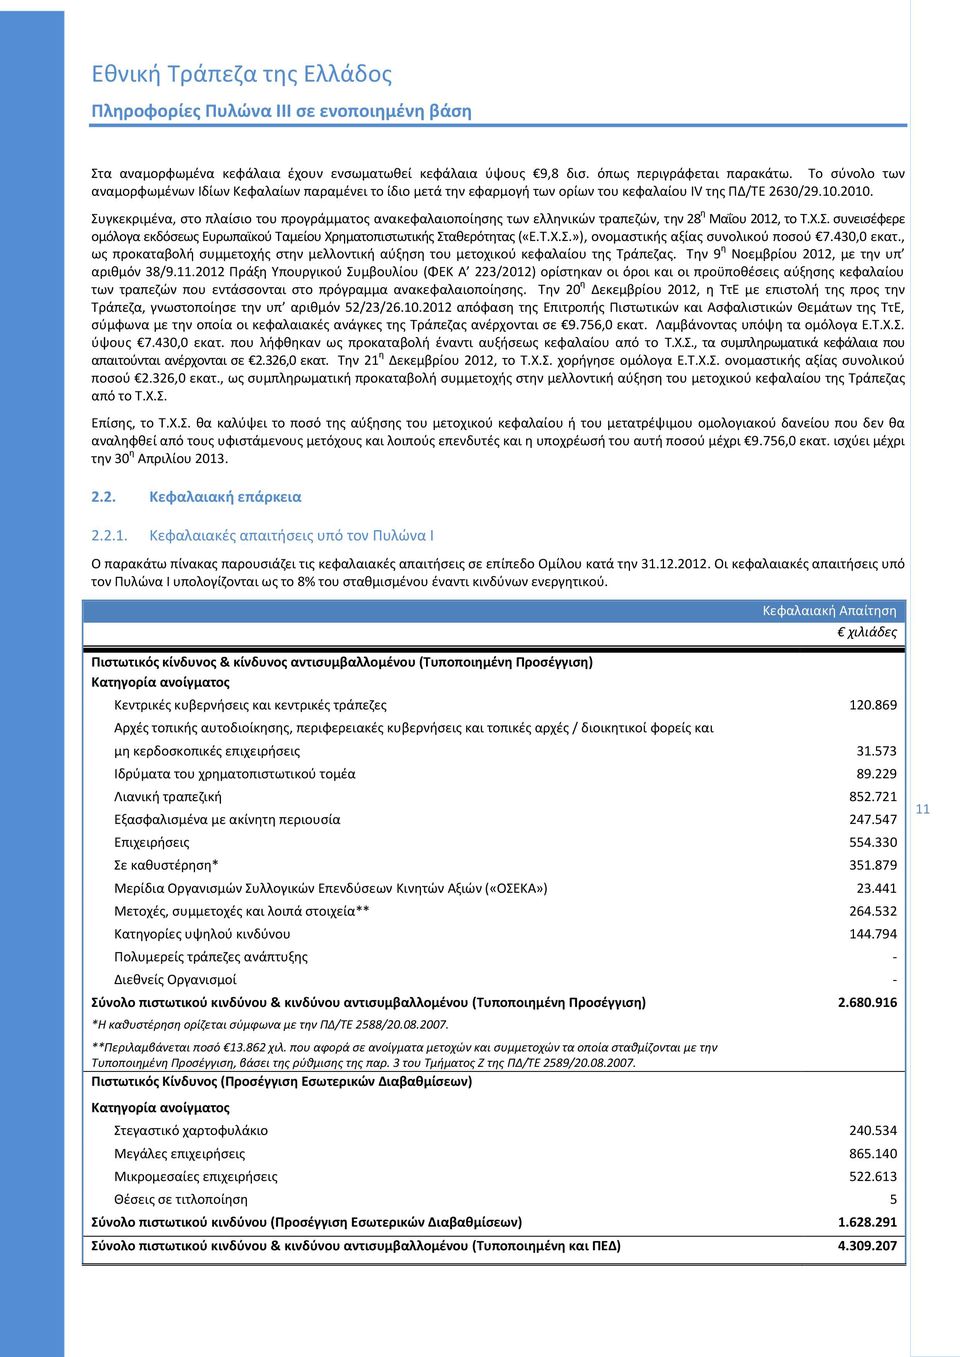 Συγκεκριμζνα, ςτο πλαίςιο του προγράμματοσ ανακεφαλαιοποίθςθσ των ελλθνικϊν τραπεηϊν, τθν 28 θ Μαΐου 2012, το Τ.Χ.Σ. ςυνειςζφερε ομόλογα εκδόςεωσ Ευρωπαϊκοφ Ταμείου Χρθματοπιςτωτικισ Στακερότθτασ («Ε.